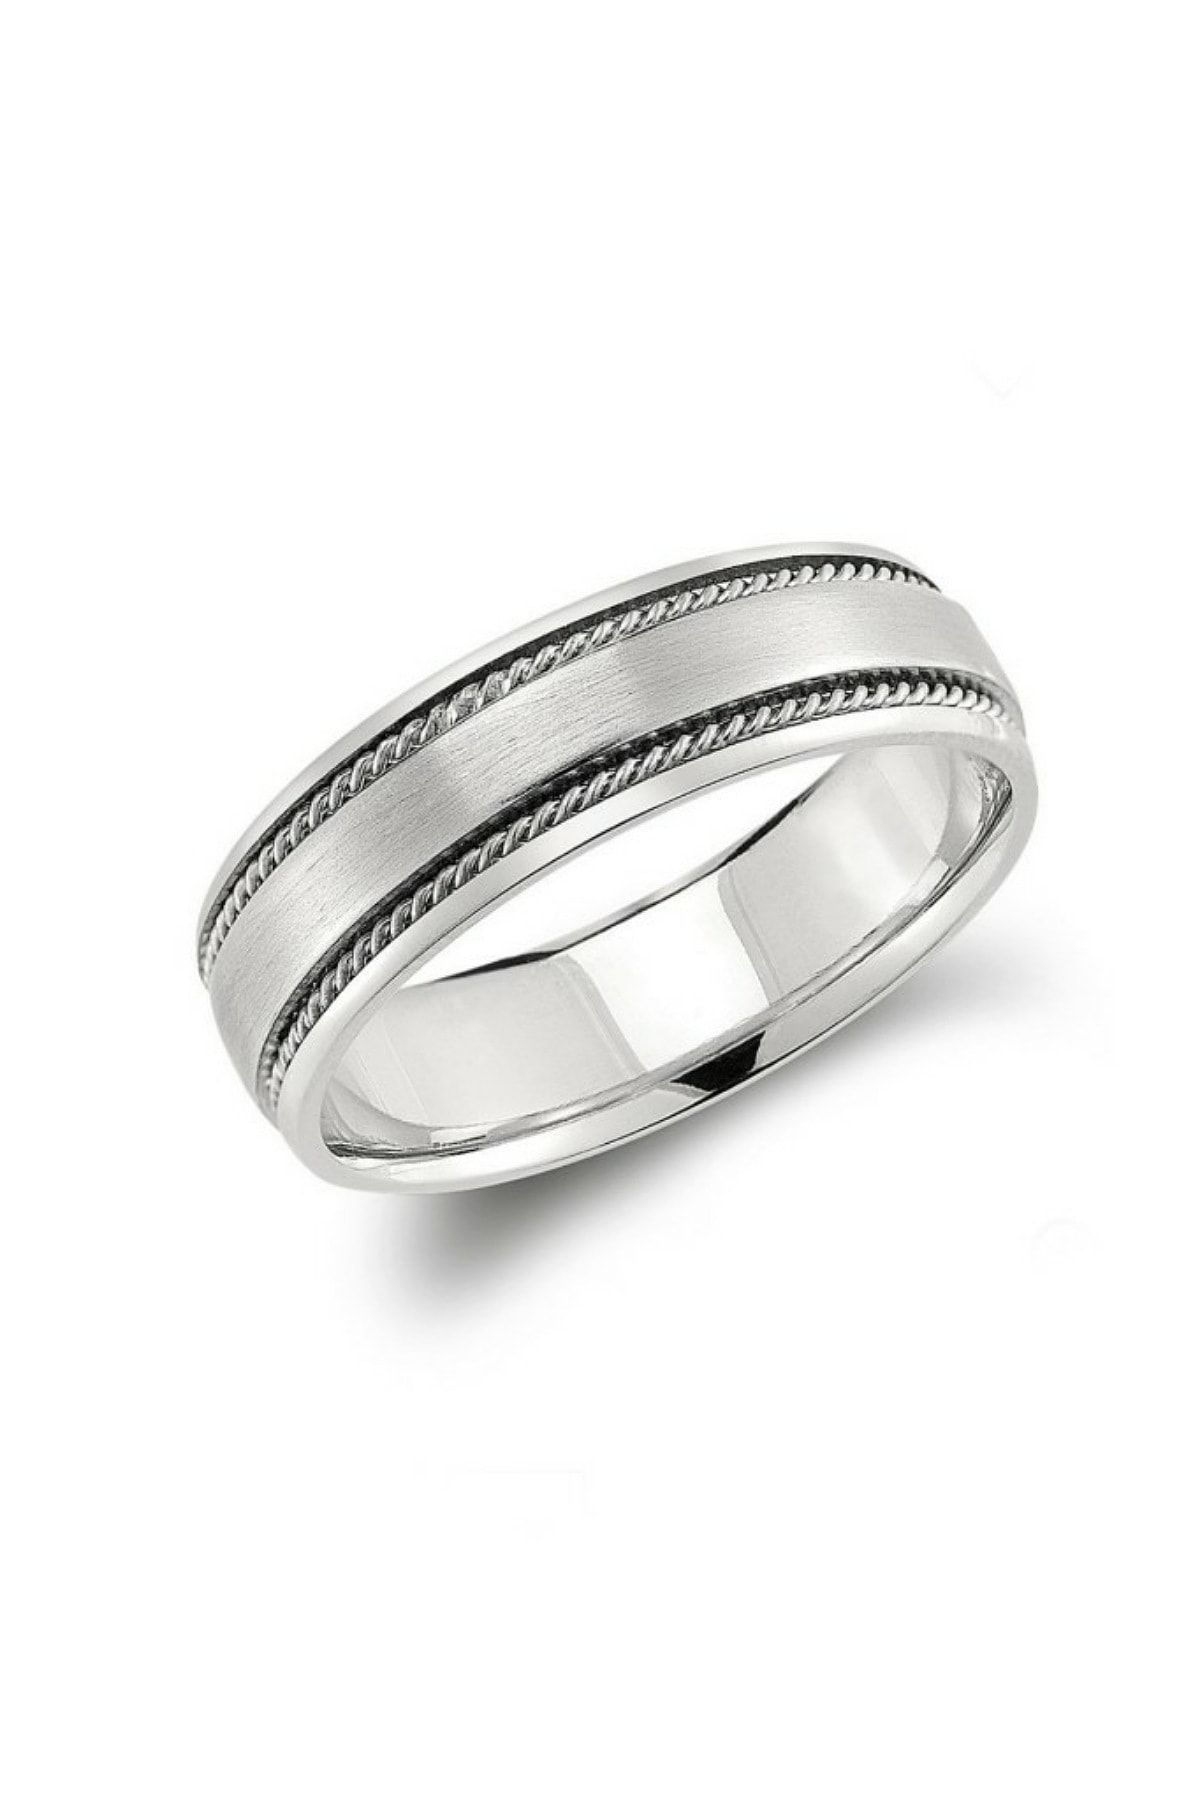 Обручальное кольцо серебро мужское. Гликин Silver кольцо. Мужские обручальные кольца из белого золота. Обручальное кольцо 6 мм. Мужские кольца из палладия.